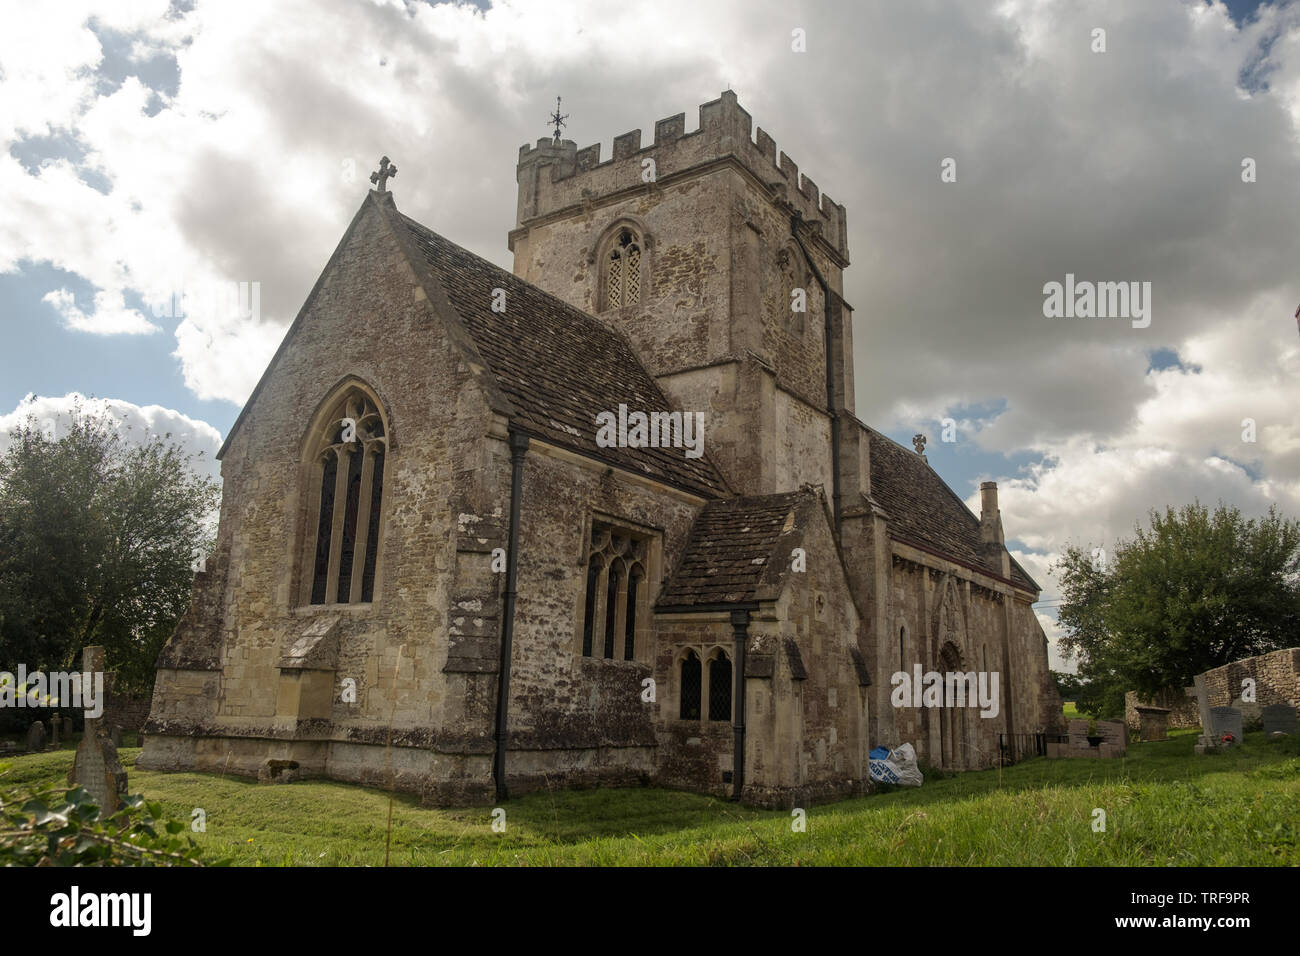 Die Kirche der Heiligen der Lullington ist ein typisches Eine der englischen Landschaft und liegt in einem schönen Pfarrei Beckington Dorf in Somerset. Stockfoto